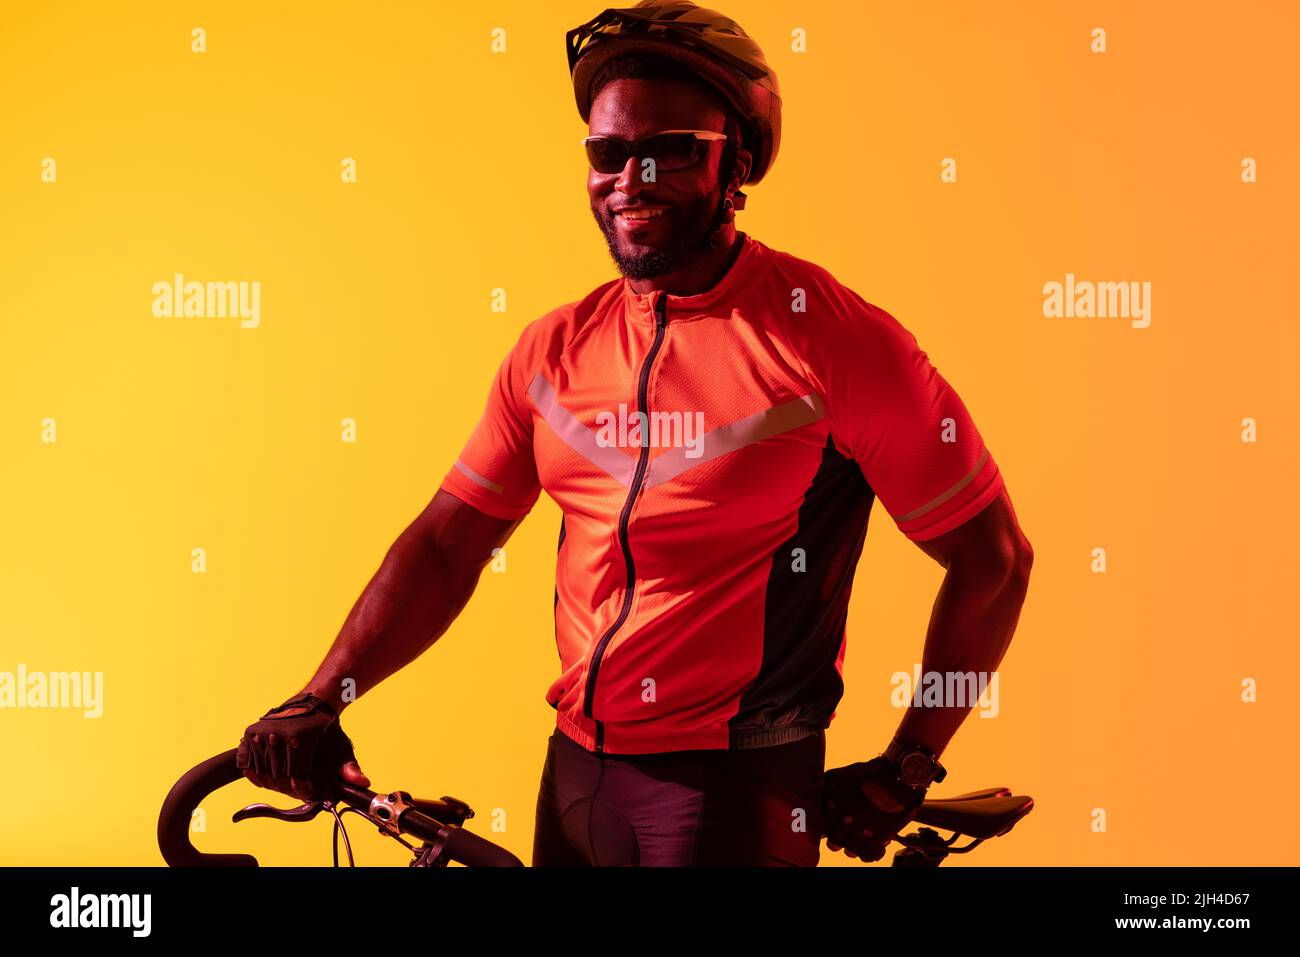 Image d'un cycliste afro-américain heureux regardant la caméra dans un éclairage jaune Banque D'Images